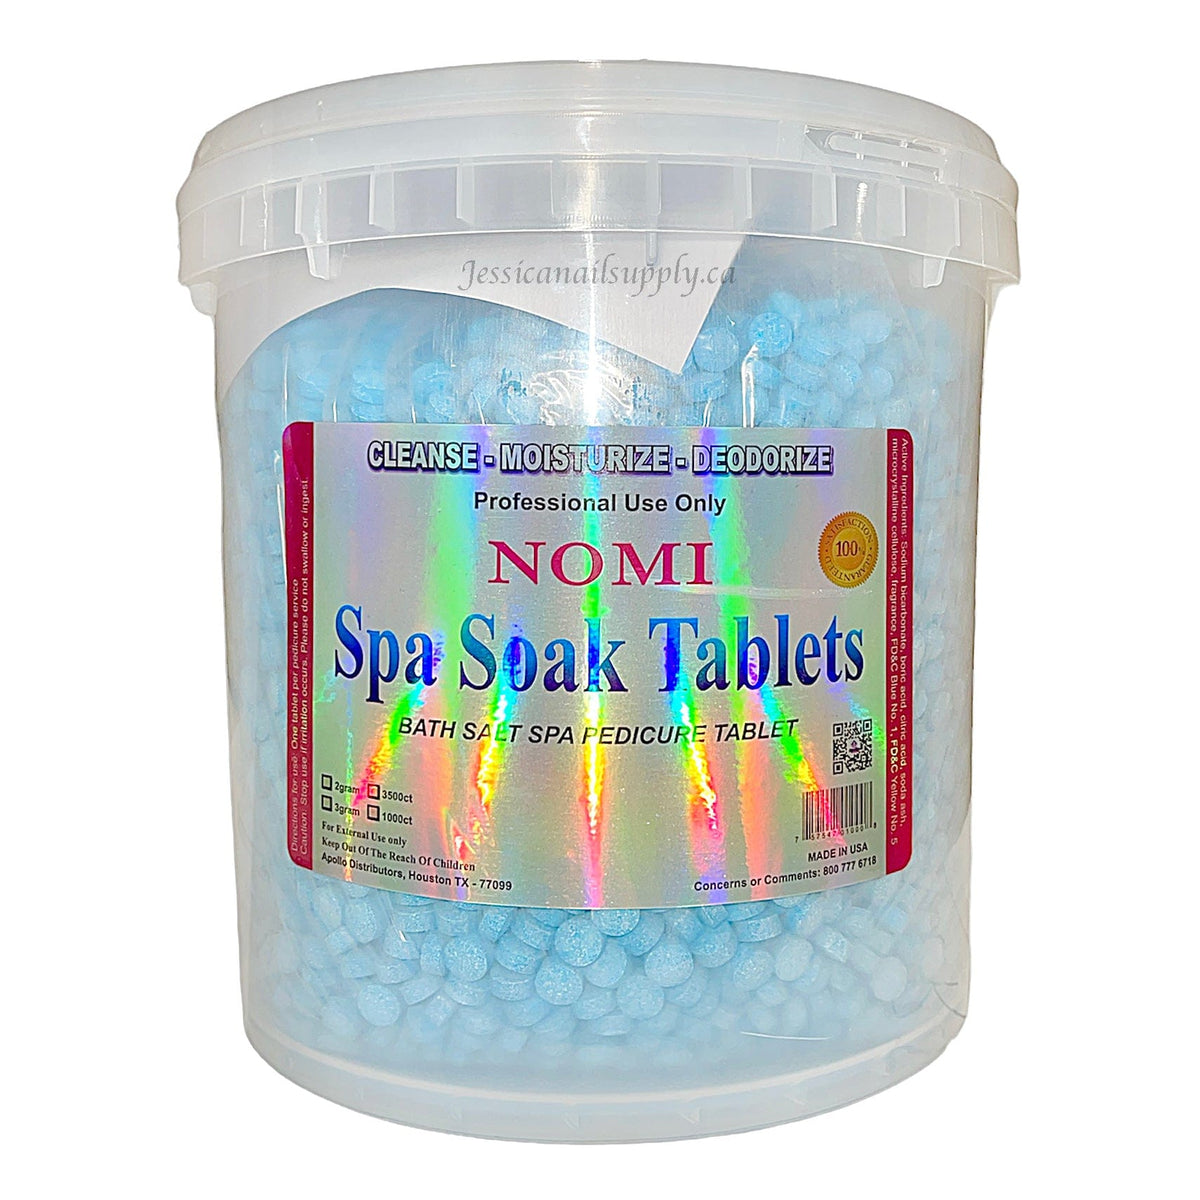 NOMI Spa Soak Tablets MINT Pedicure Salt Mini Tablet